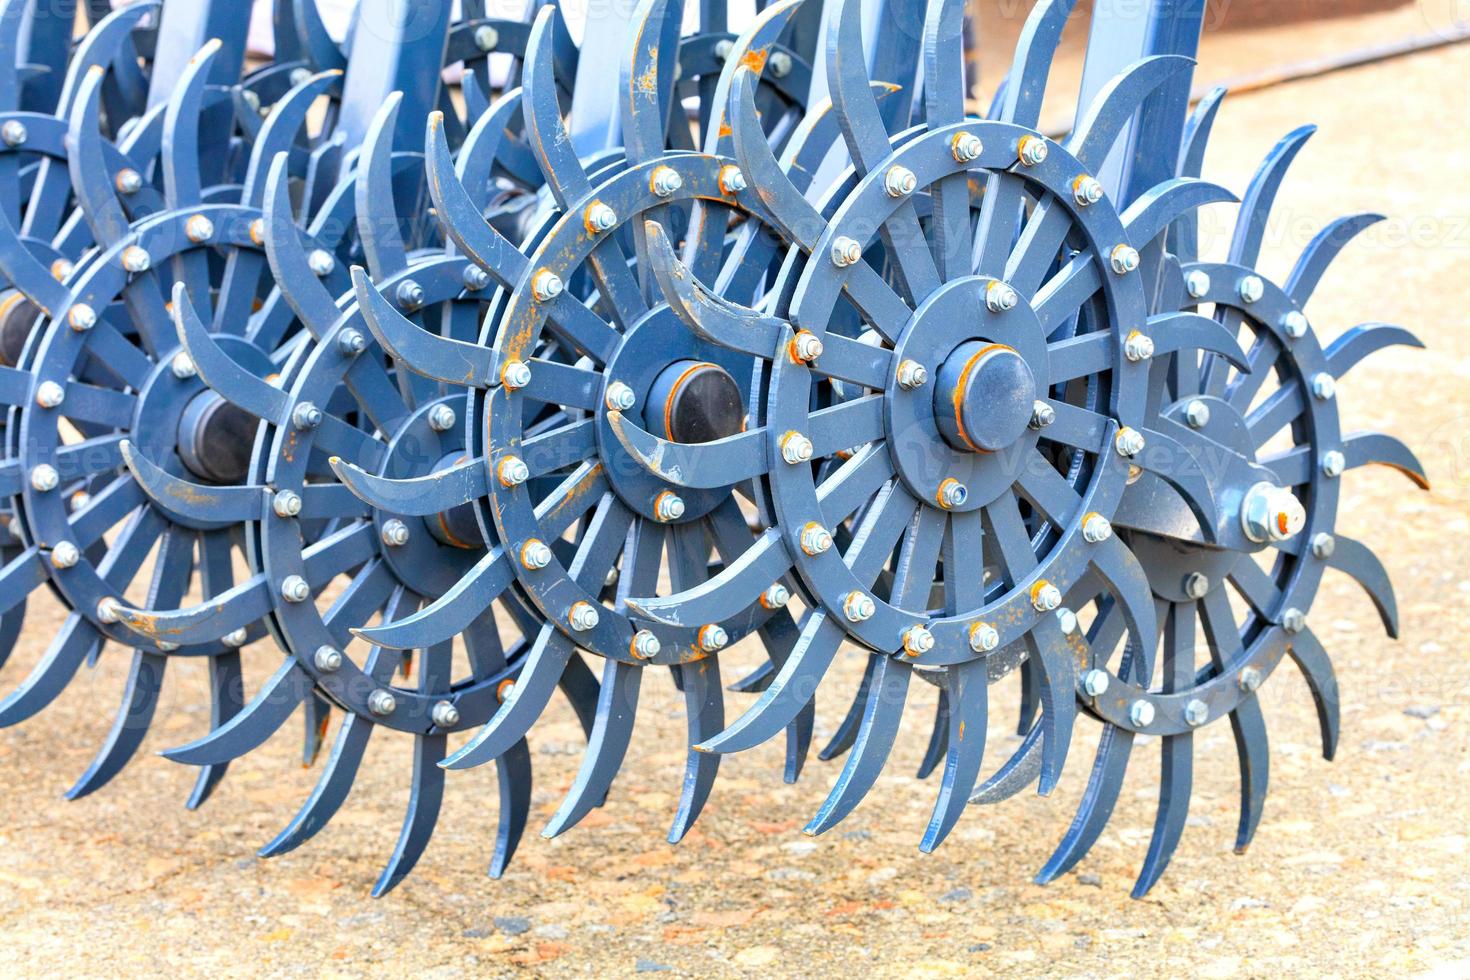 blaugezahnte Metallegge für die Feldbearbeitung. foto